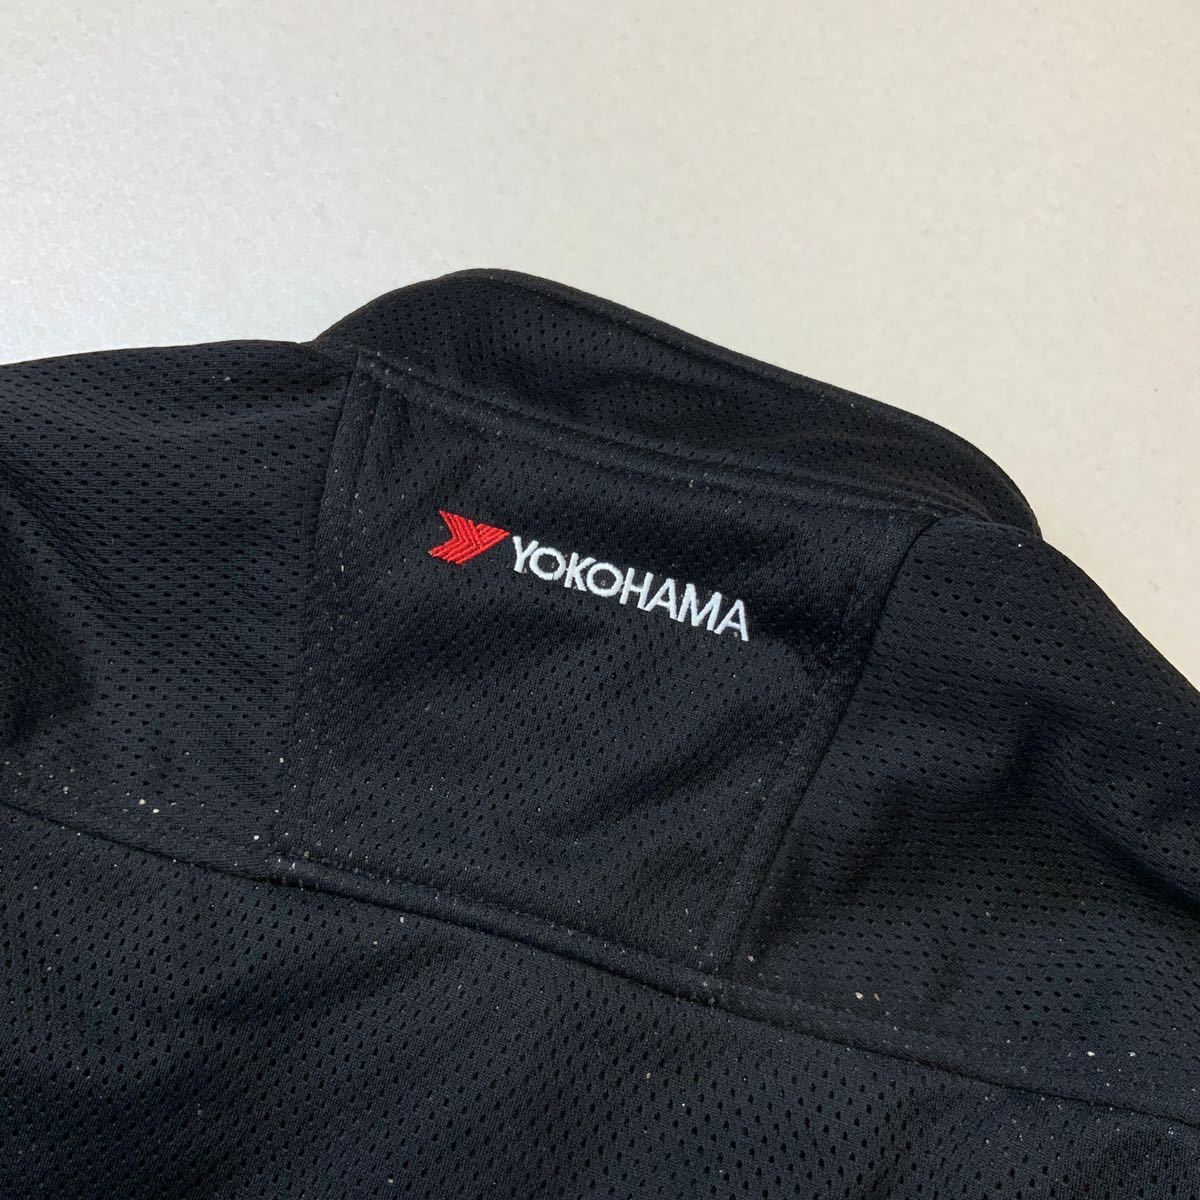  редкий не продается Yokohama шина YOKOHAMA защищающий от холода жакет рабочая одежда мужской L размер черный Work жакет 